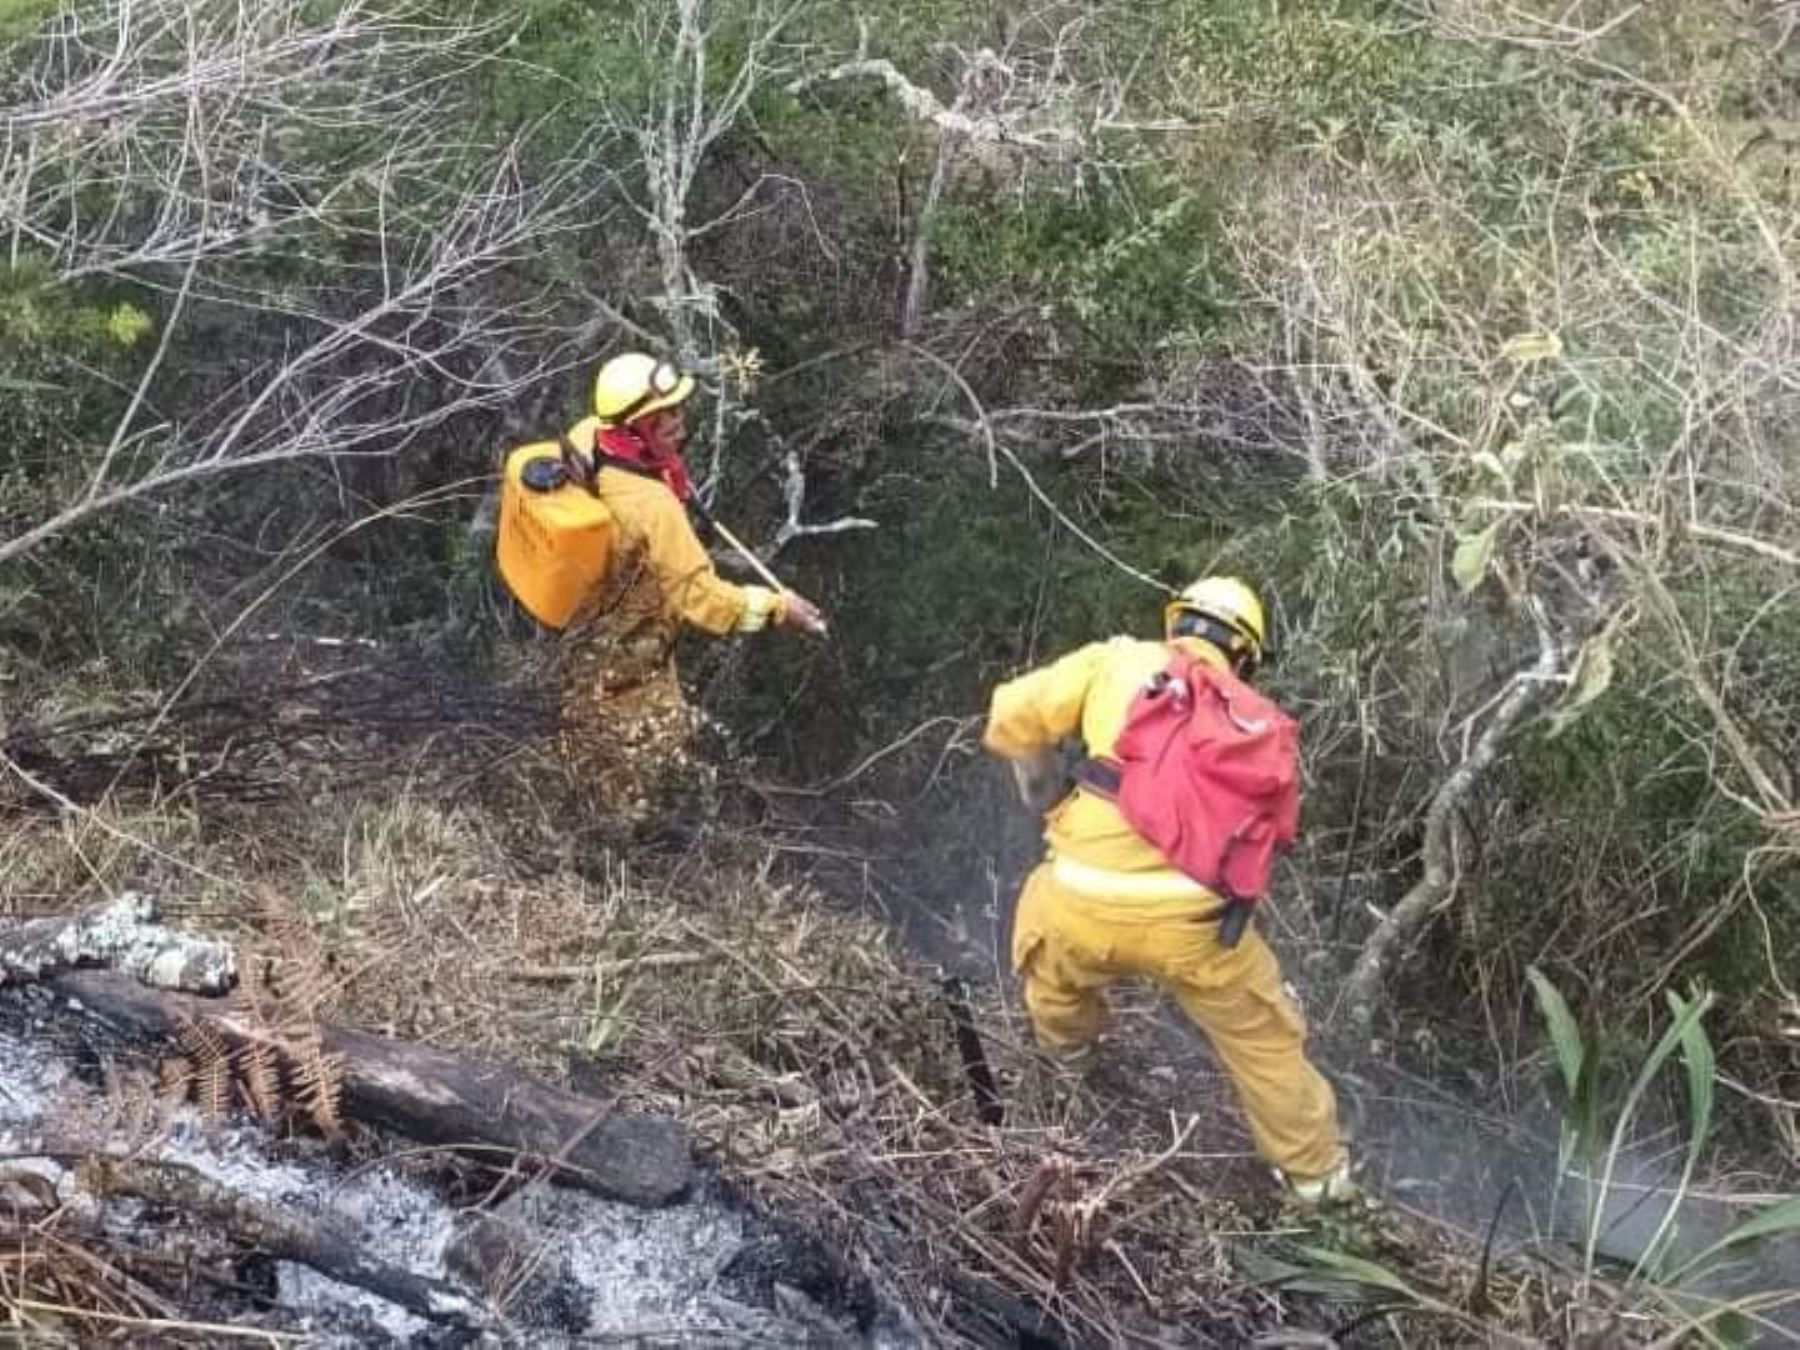 Bomberos forestales del Sernanp participan de las acciones para controlar los incendios forestales que se registran en la provincia de Abancay, región Apurímac, y afectan al Santuario Nacional de Ampay. Foto: ANDINA/difusión.